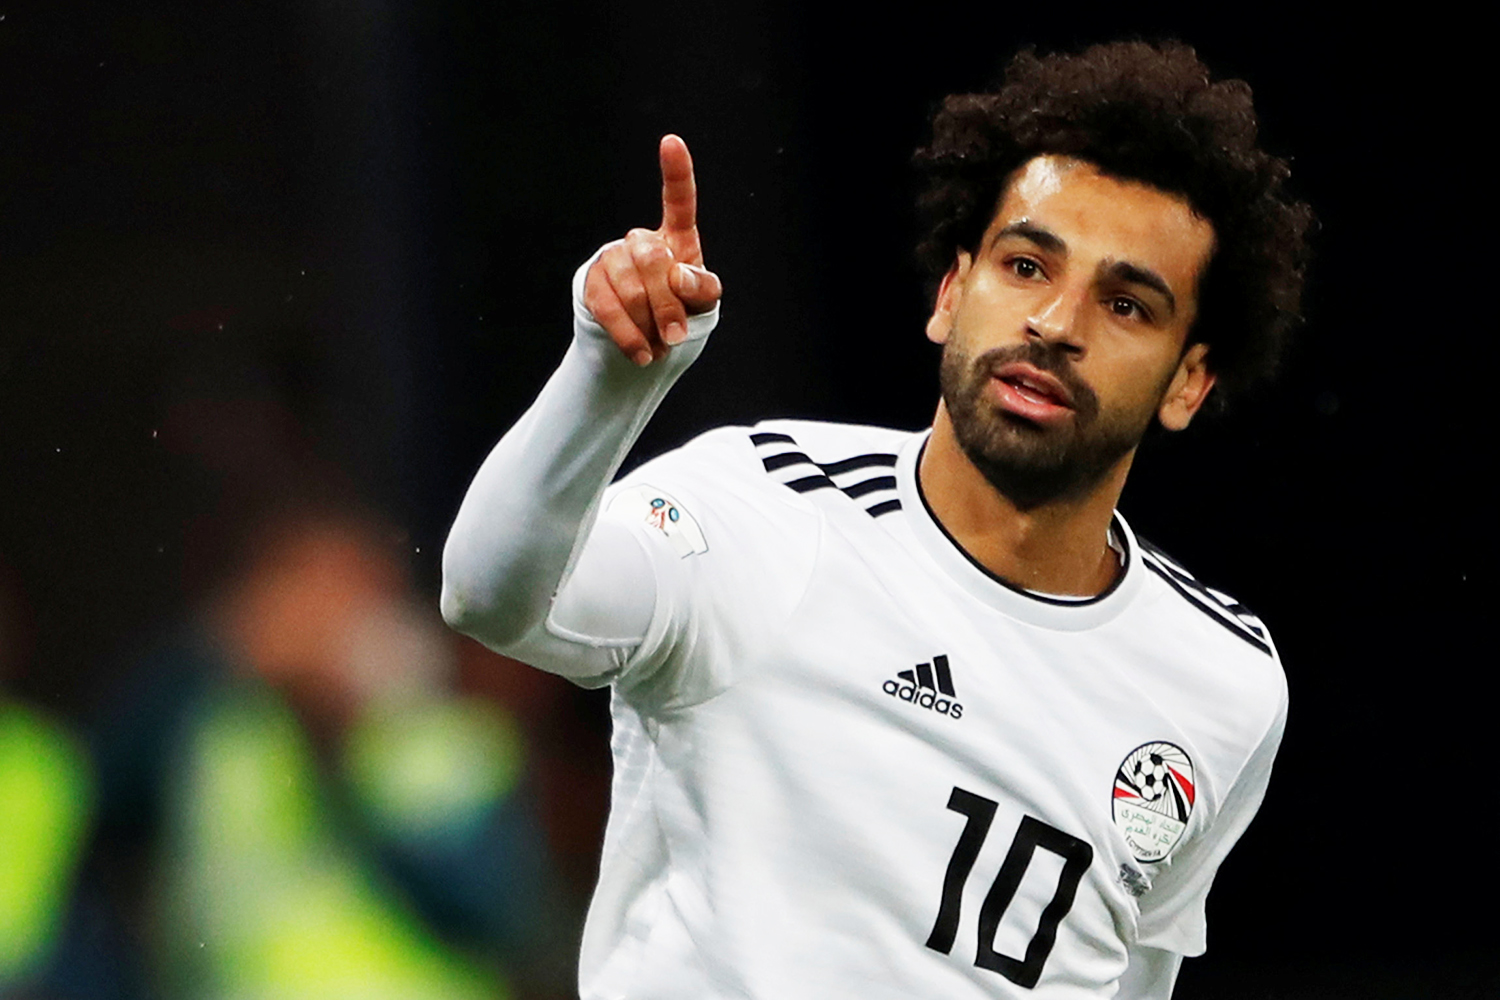 Saiba como assistir a Arábia Saudita x Egito pela Copa do Mundo 2018